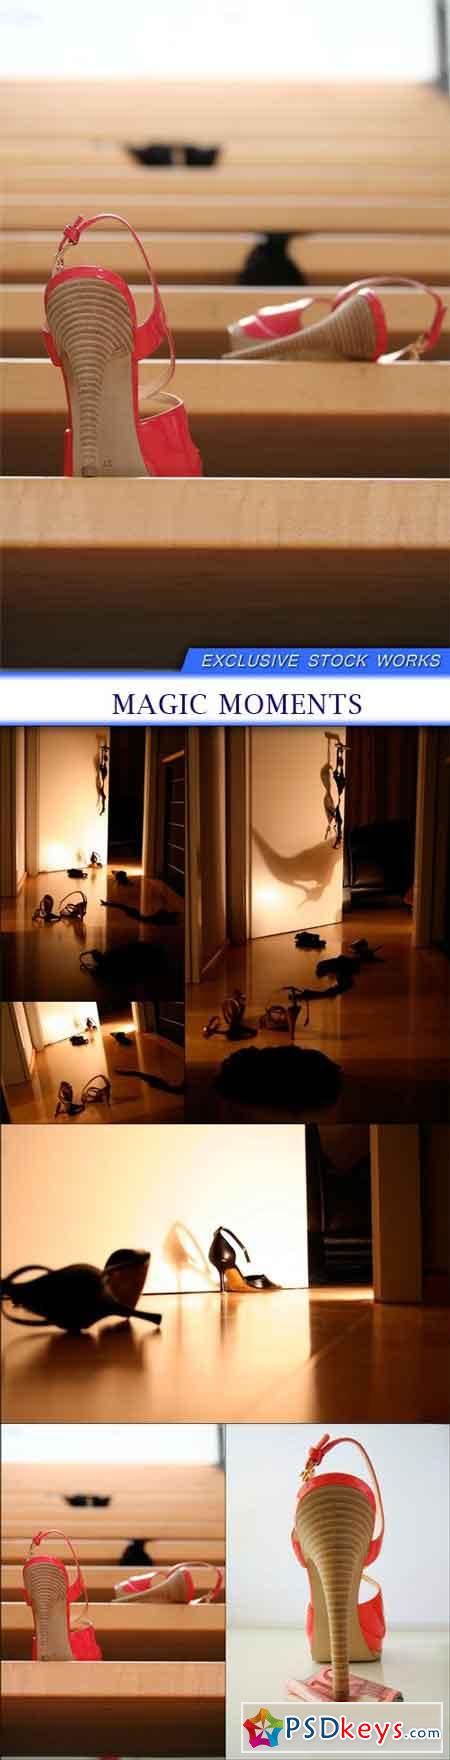 Magic moments 6X JPEG